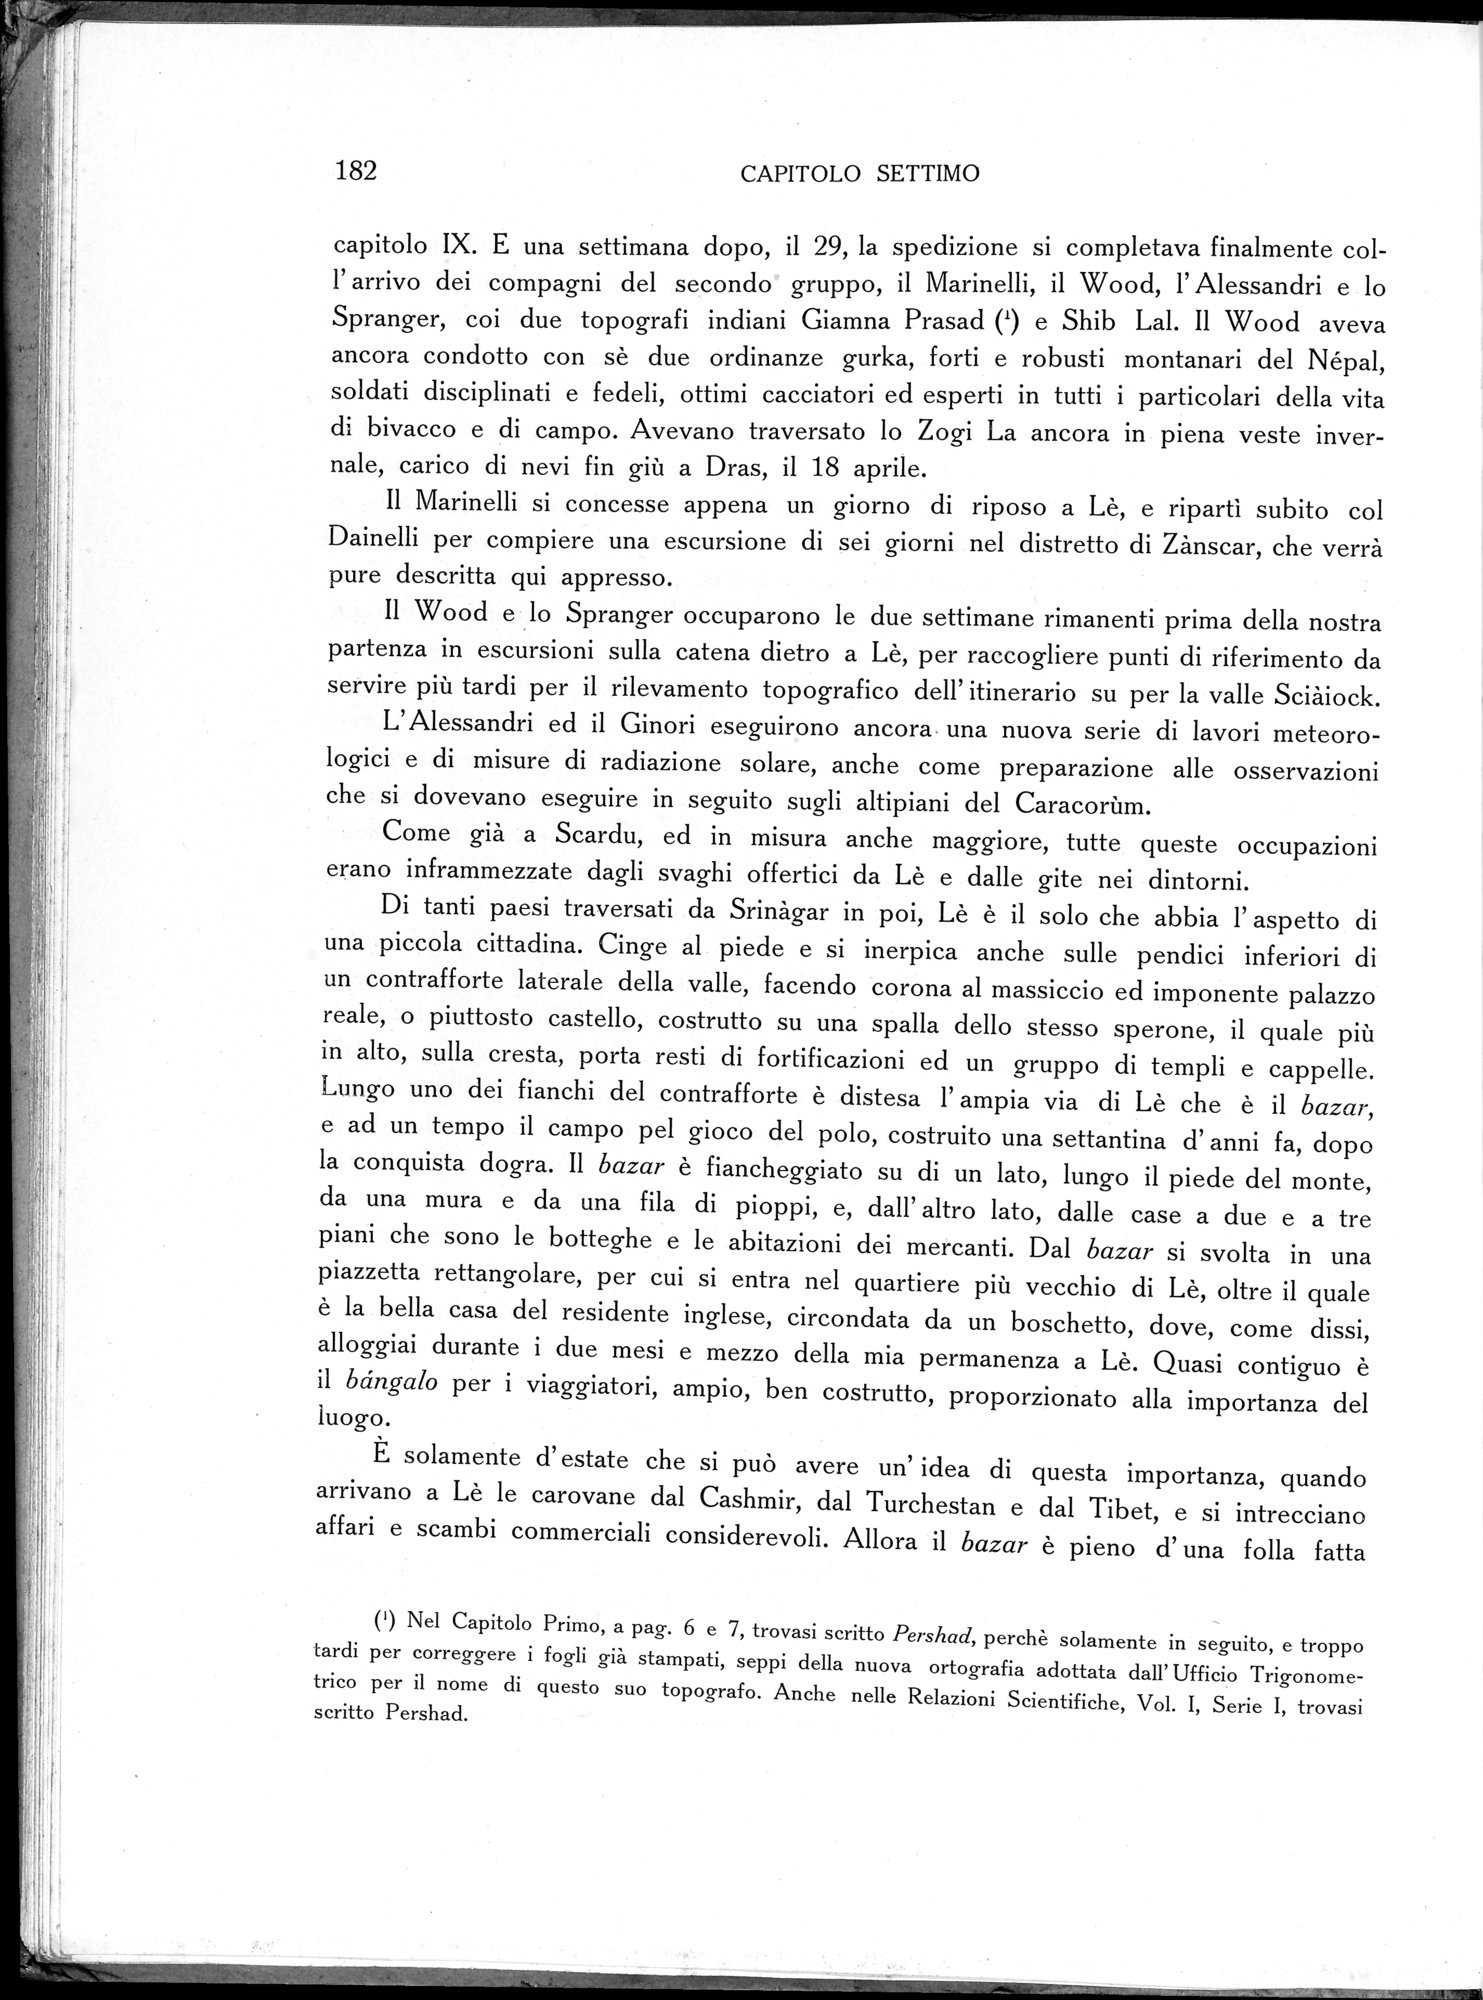 Storia della Spedizione Scientifica Italiana nel Himàlaia, Caracorùm e Turchestàn Cinese(1913-1914) : vol.1 / Page 224 (Grayscale High Resolution Image)